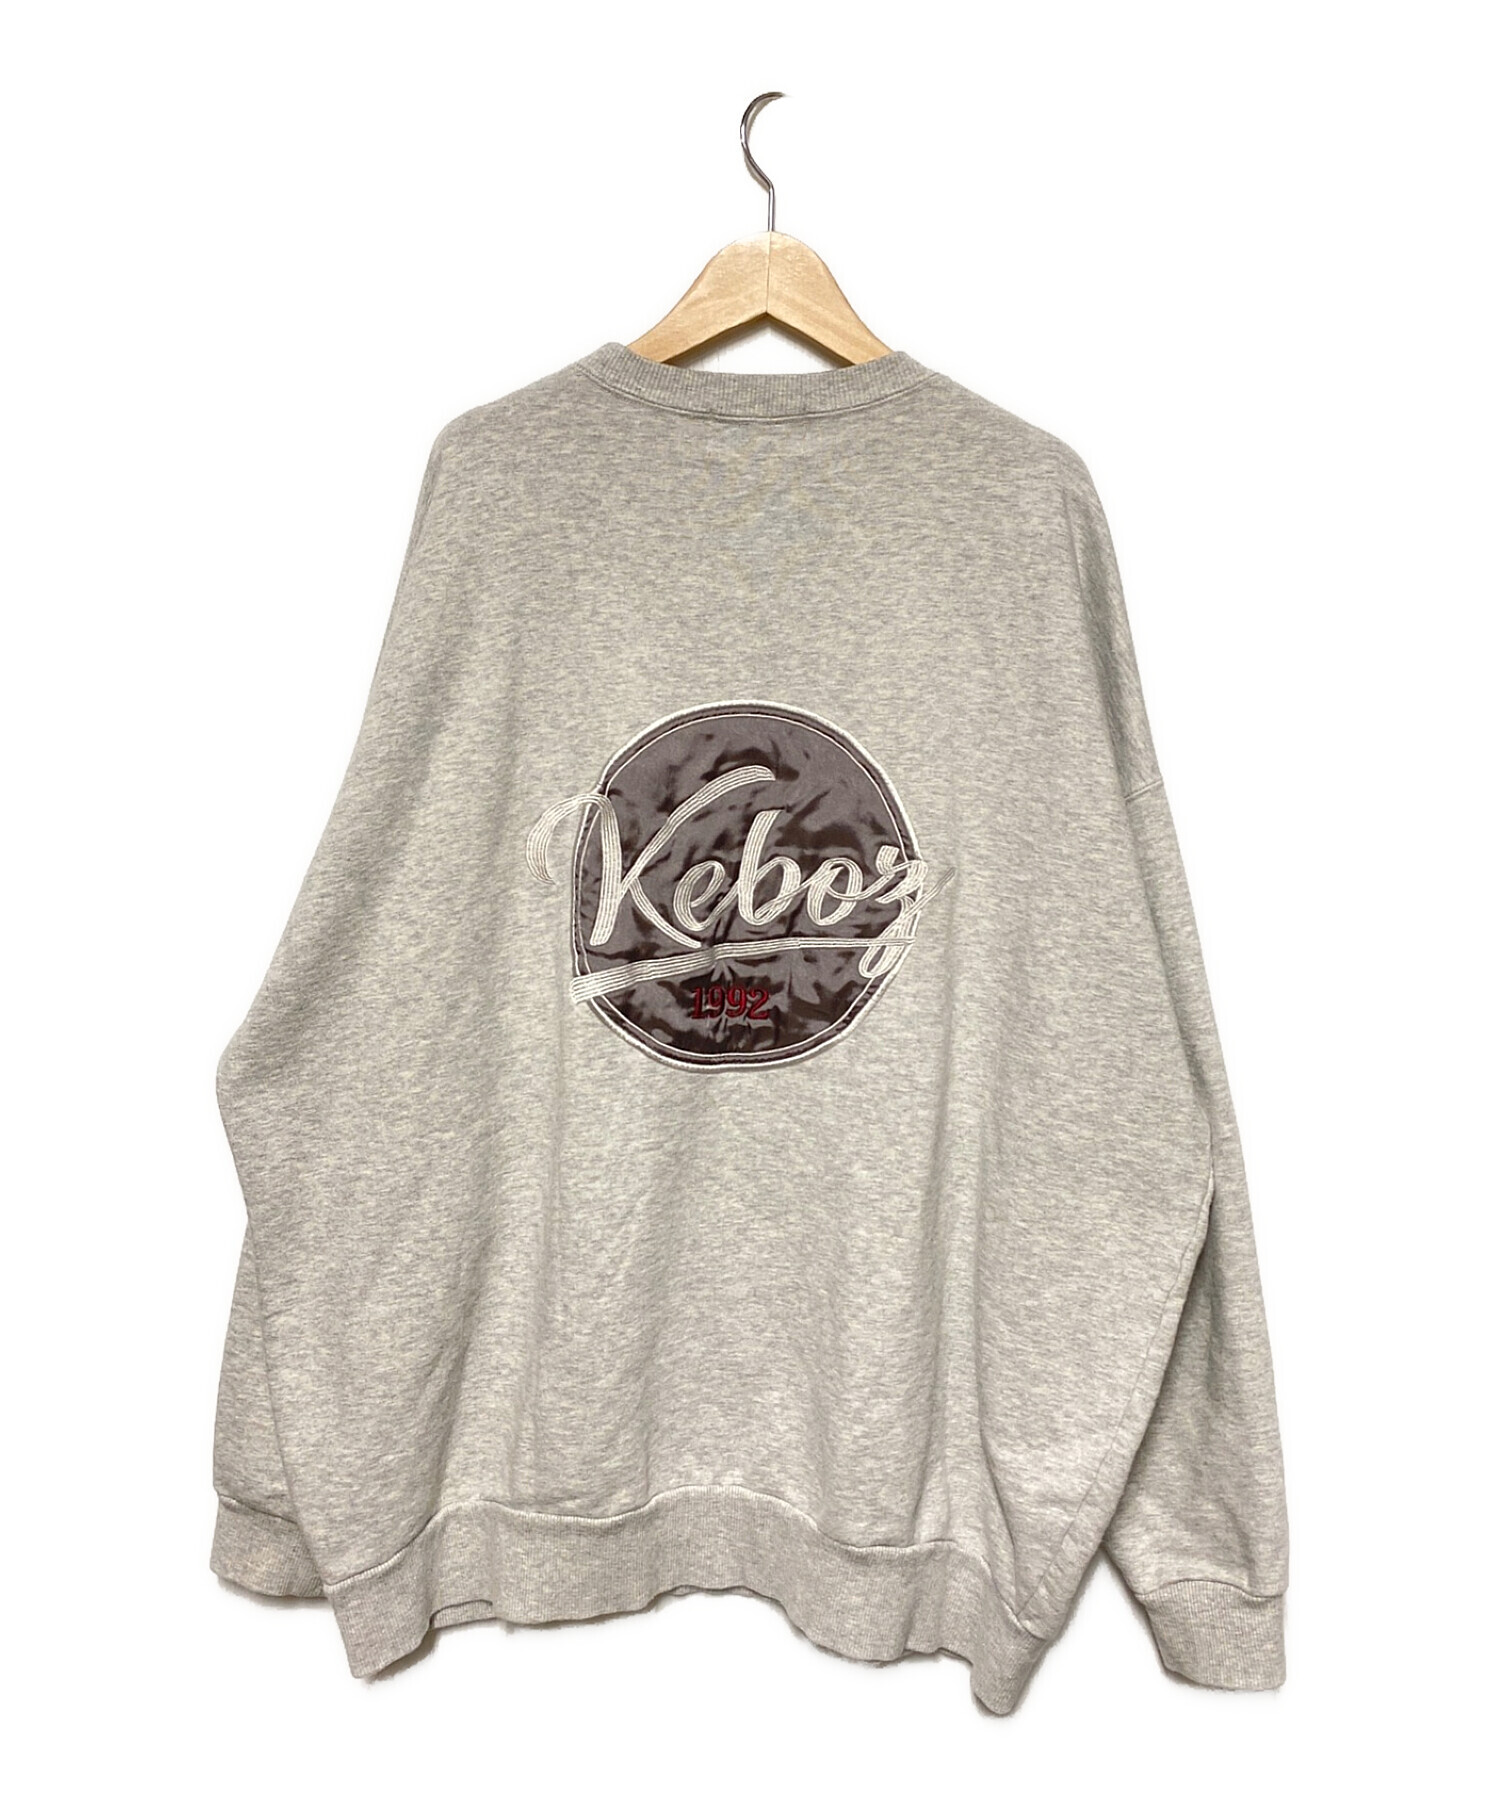 ファッション【keboz】美品 XXL 刺繍バックロゴ スウェットトレーナー グレー ケボズ